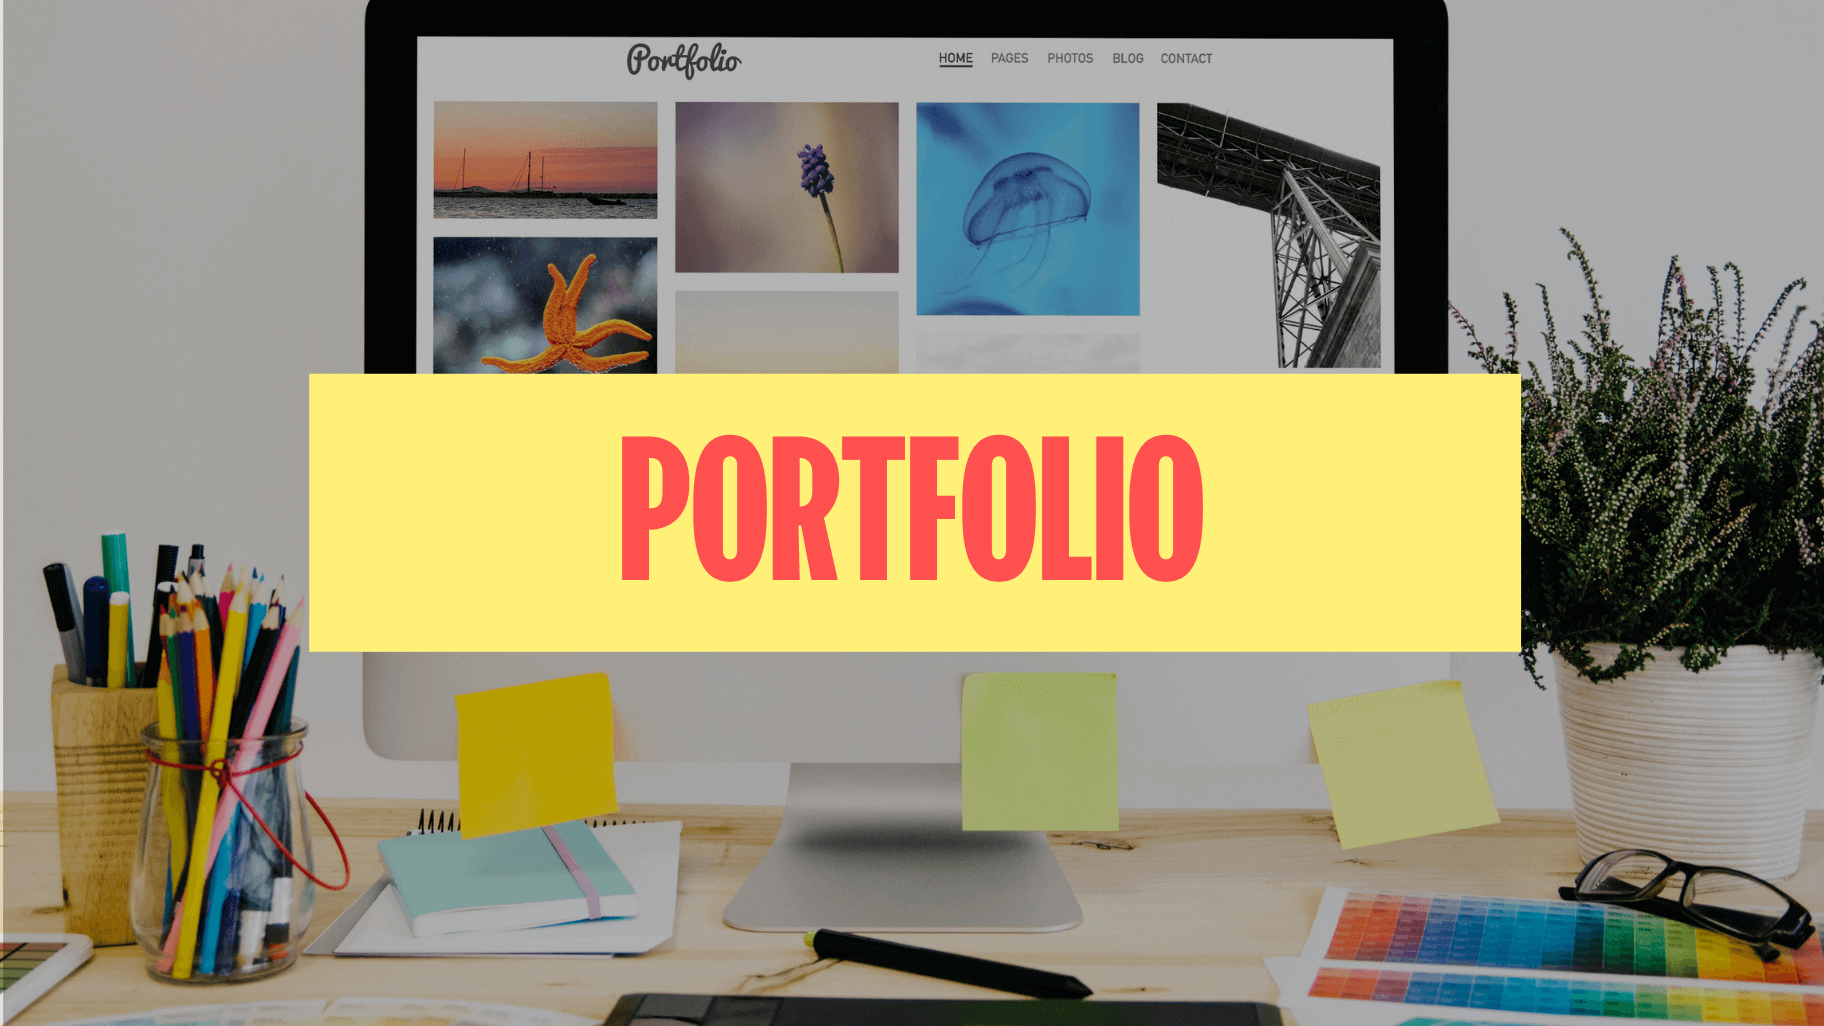 qué es el portfolio